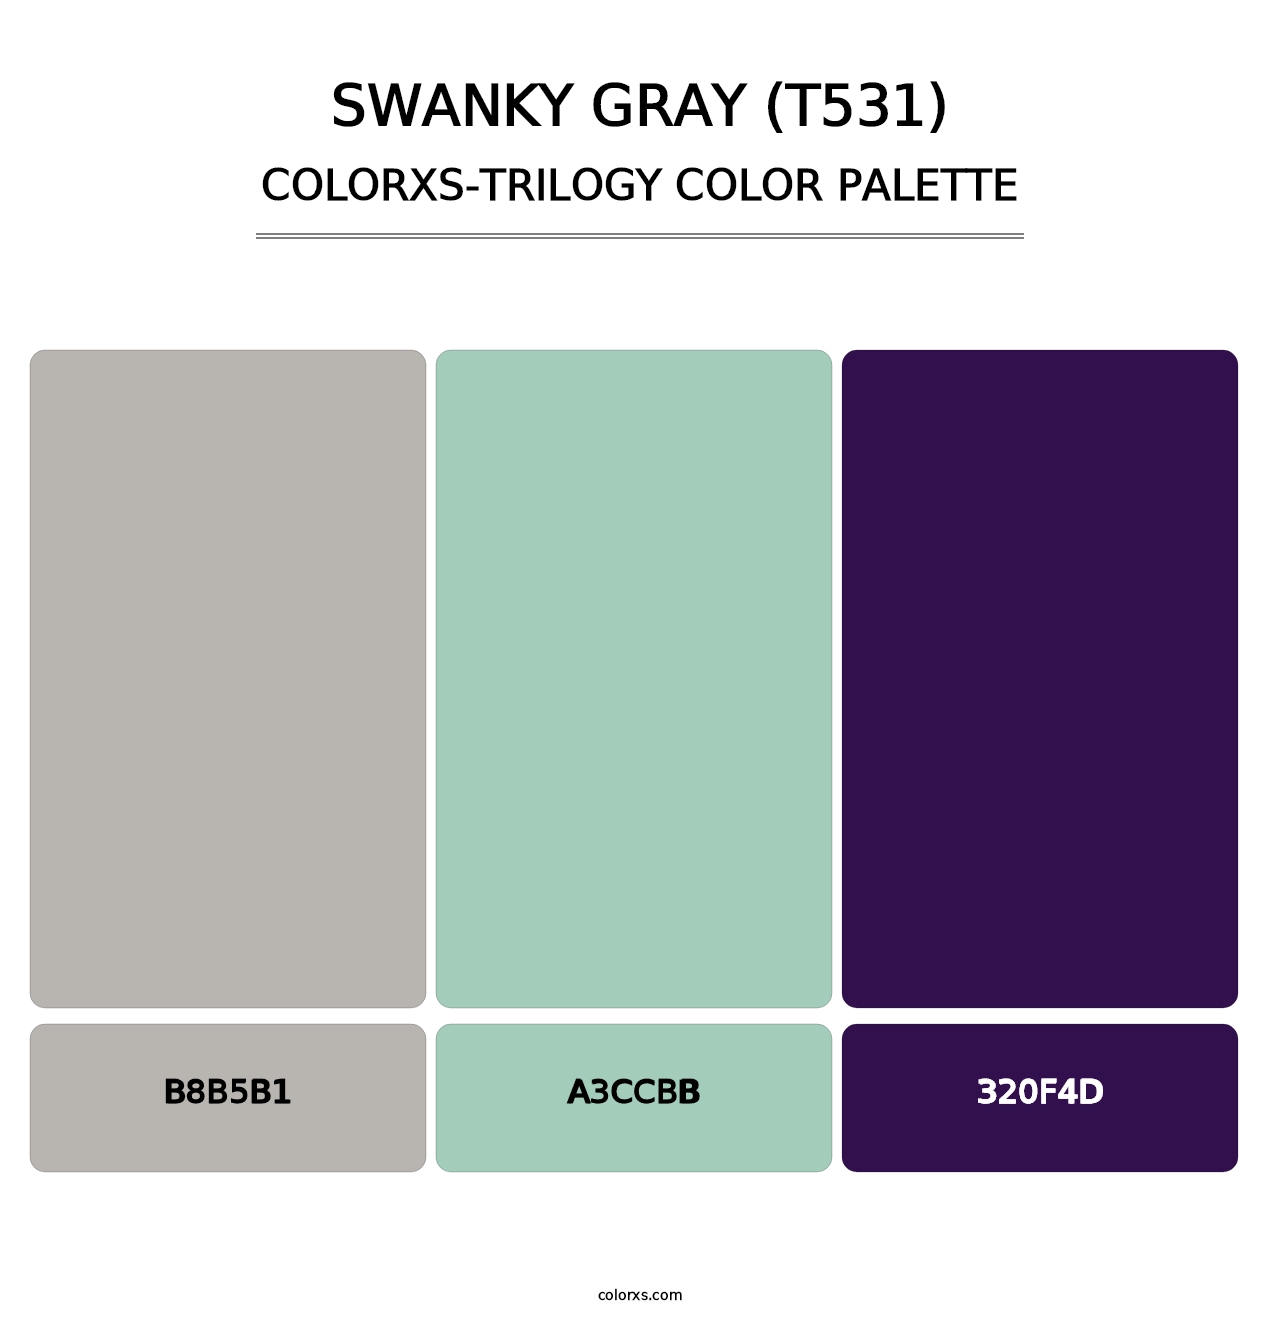 Swanky Gray (T531) - Colorxs Trilogy Palette